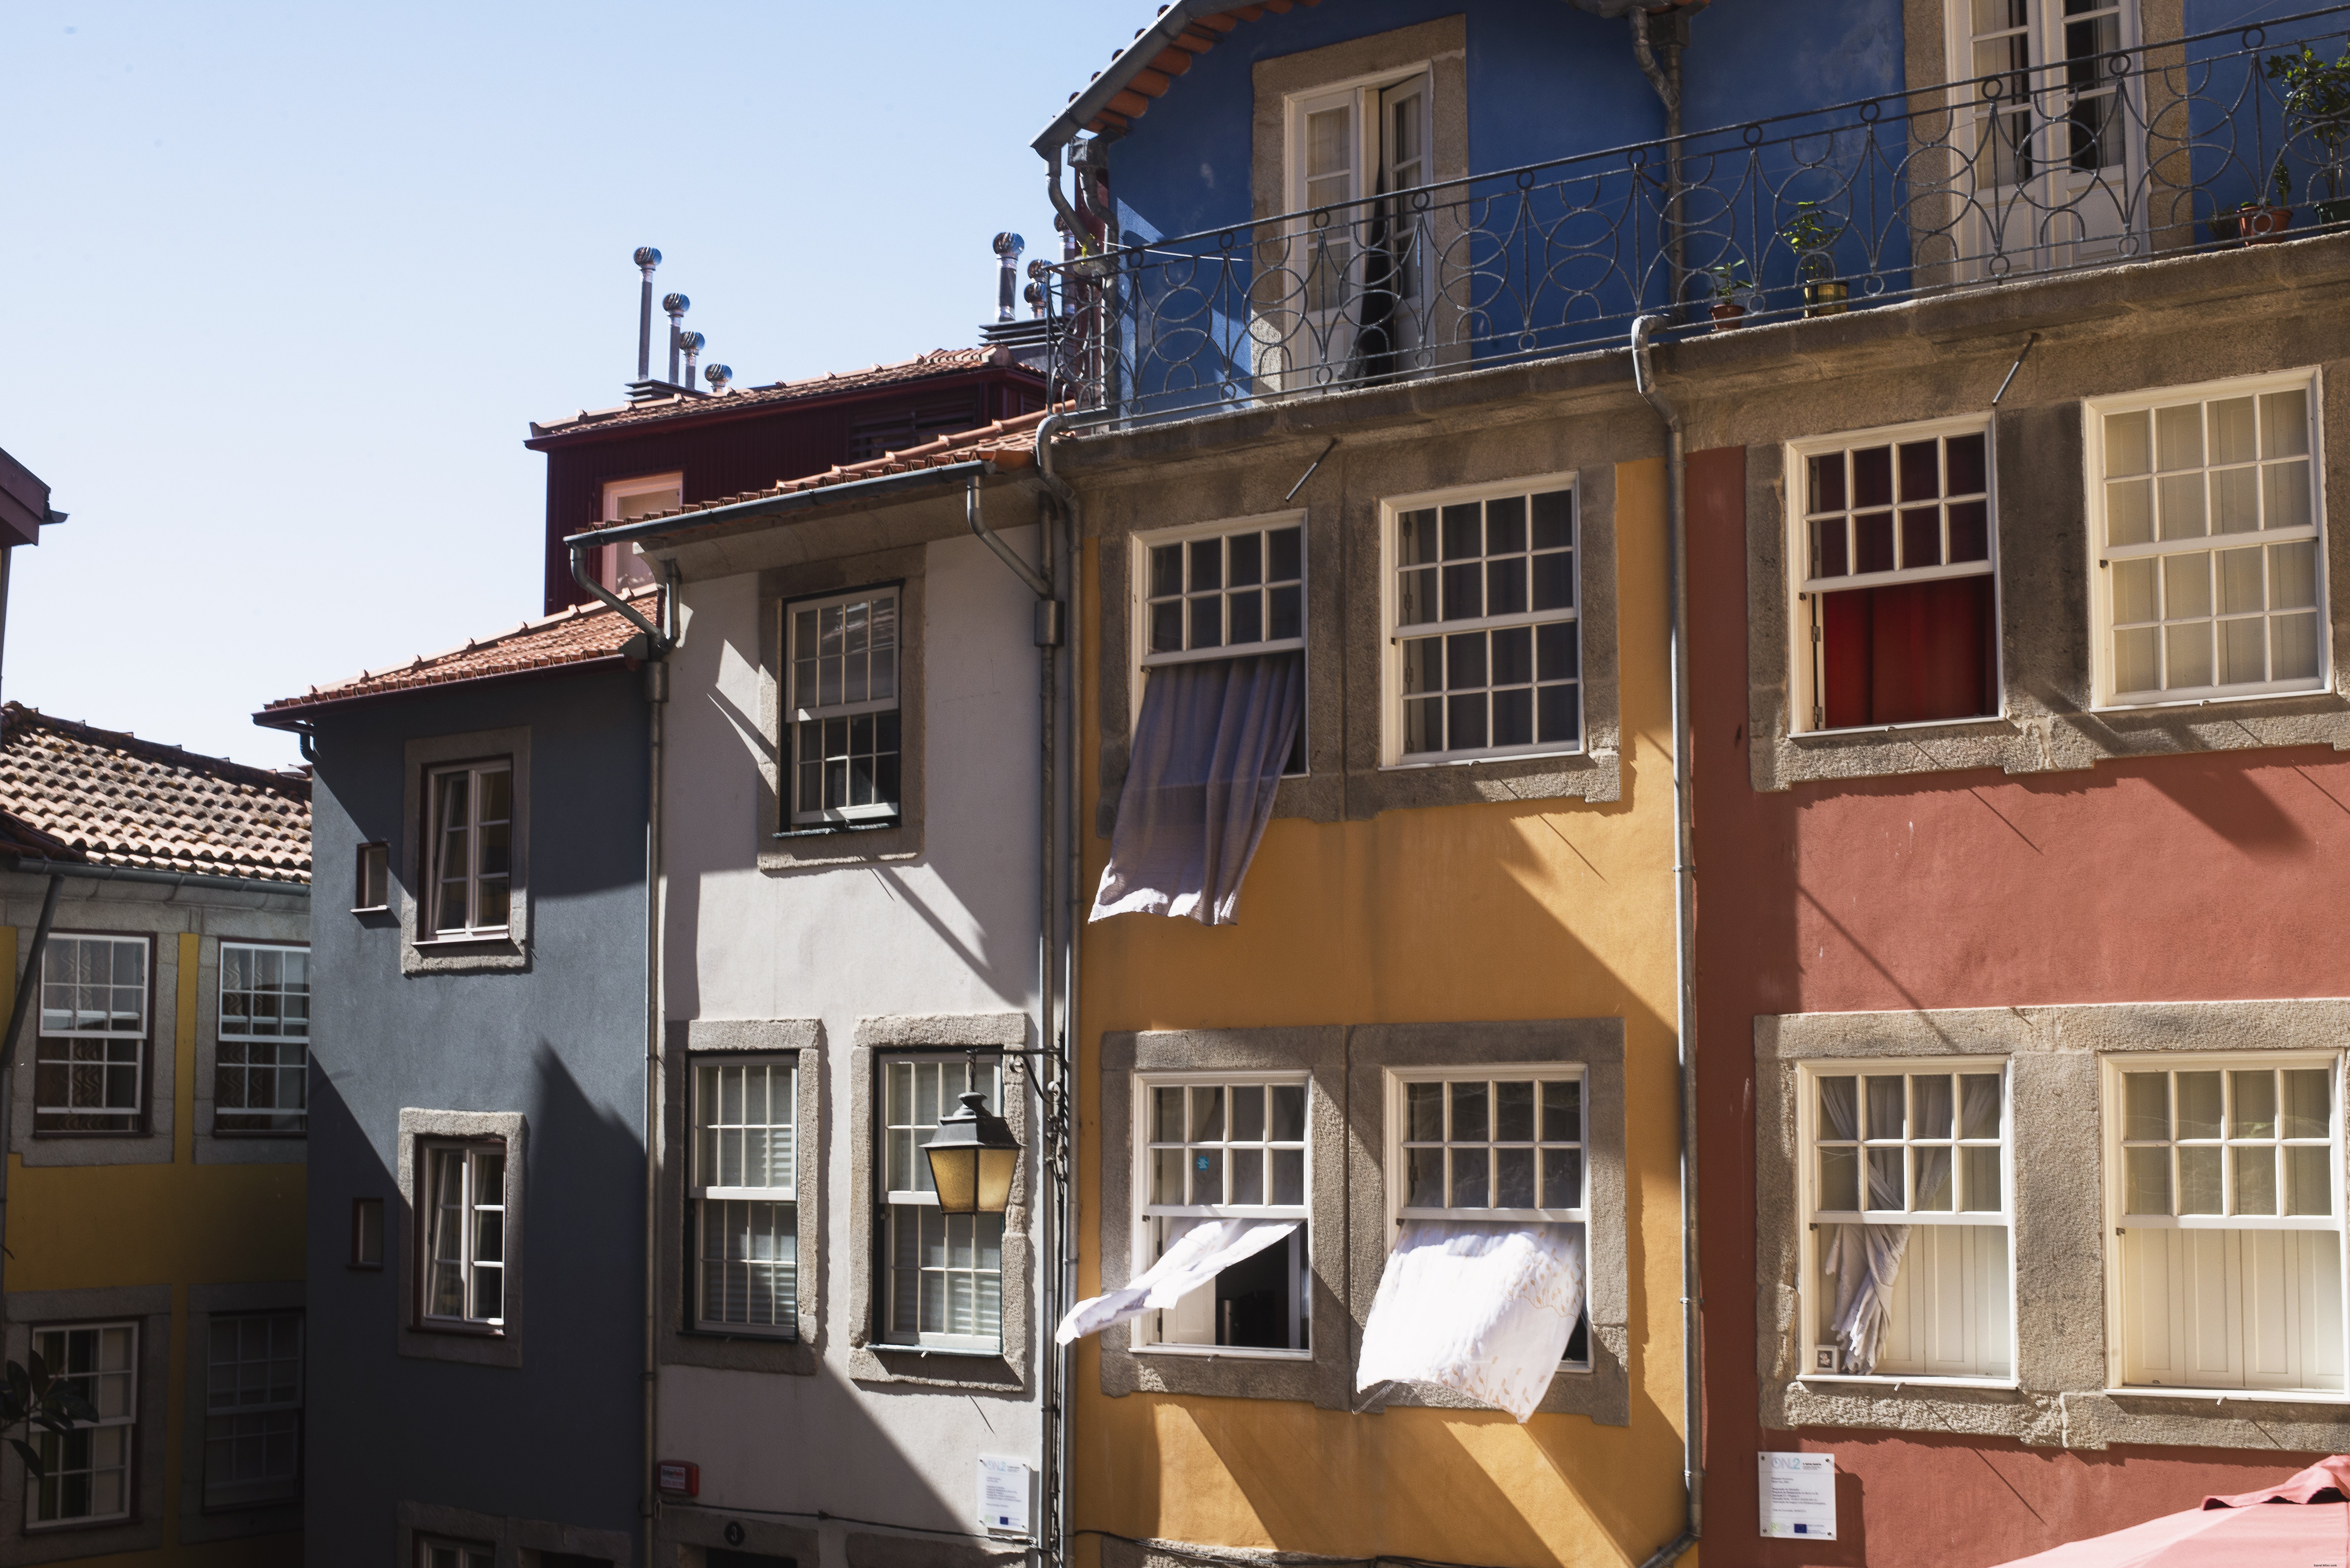 Rideaux qui coulent à travers les fenêtres de ces bâtiments colorés Photo